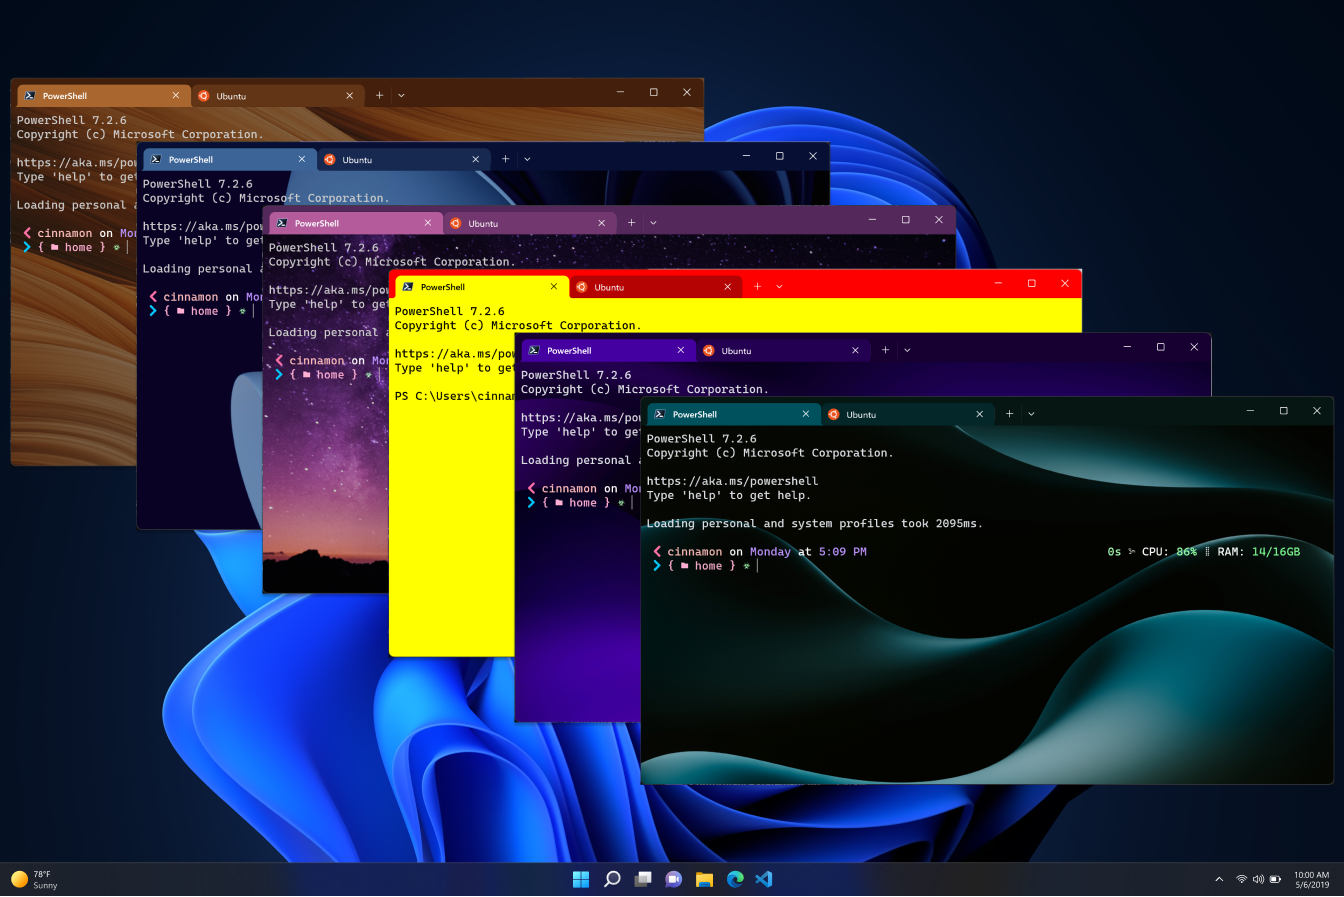 Windows Terminal unterstützt jetzt Farbdesigns